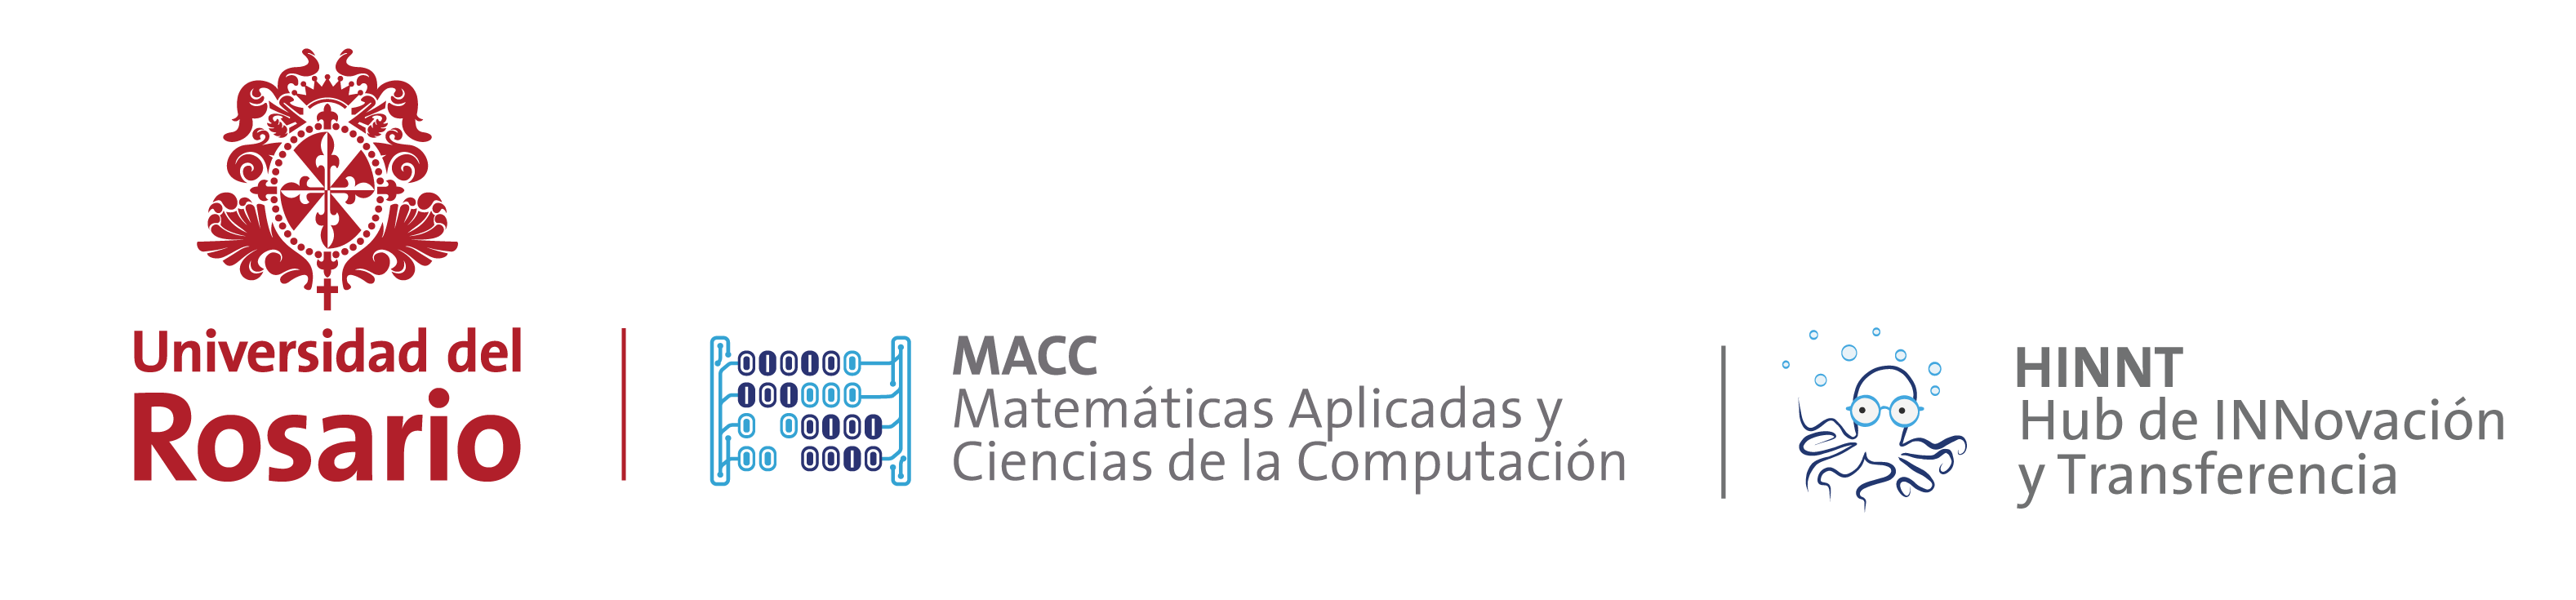 Logo Macc HINNT 1